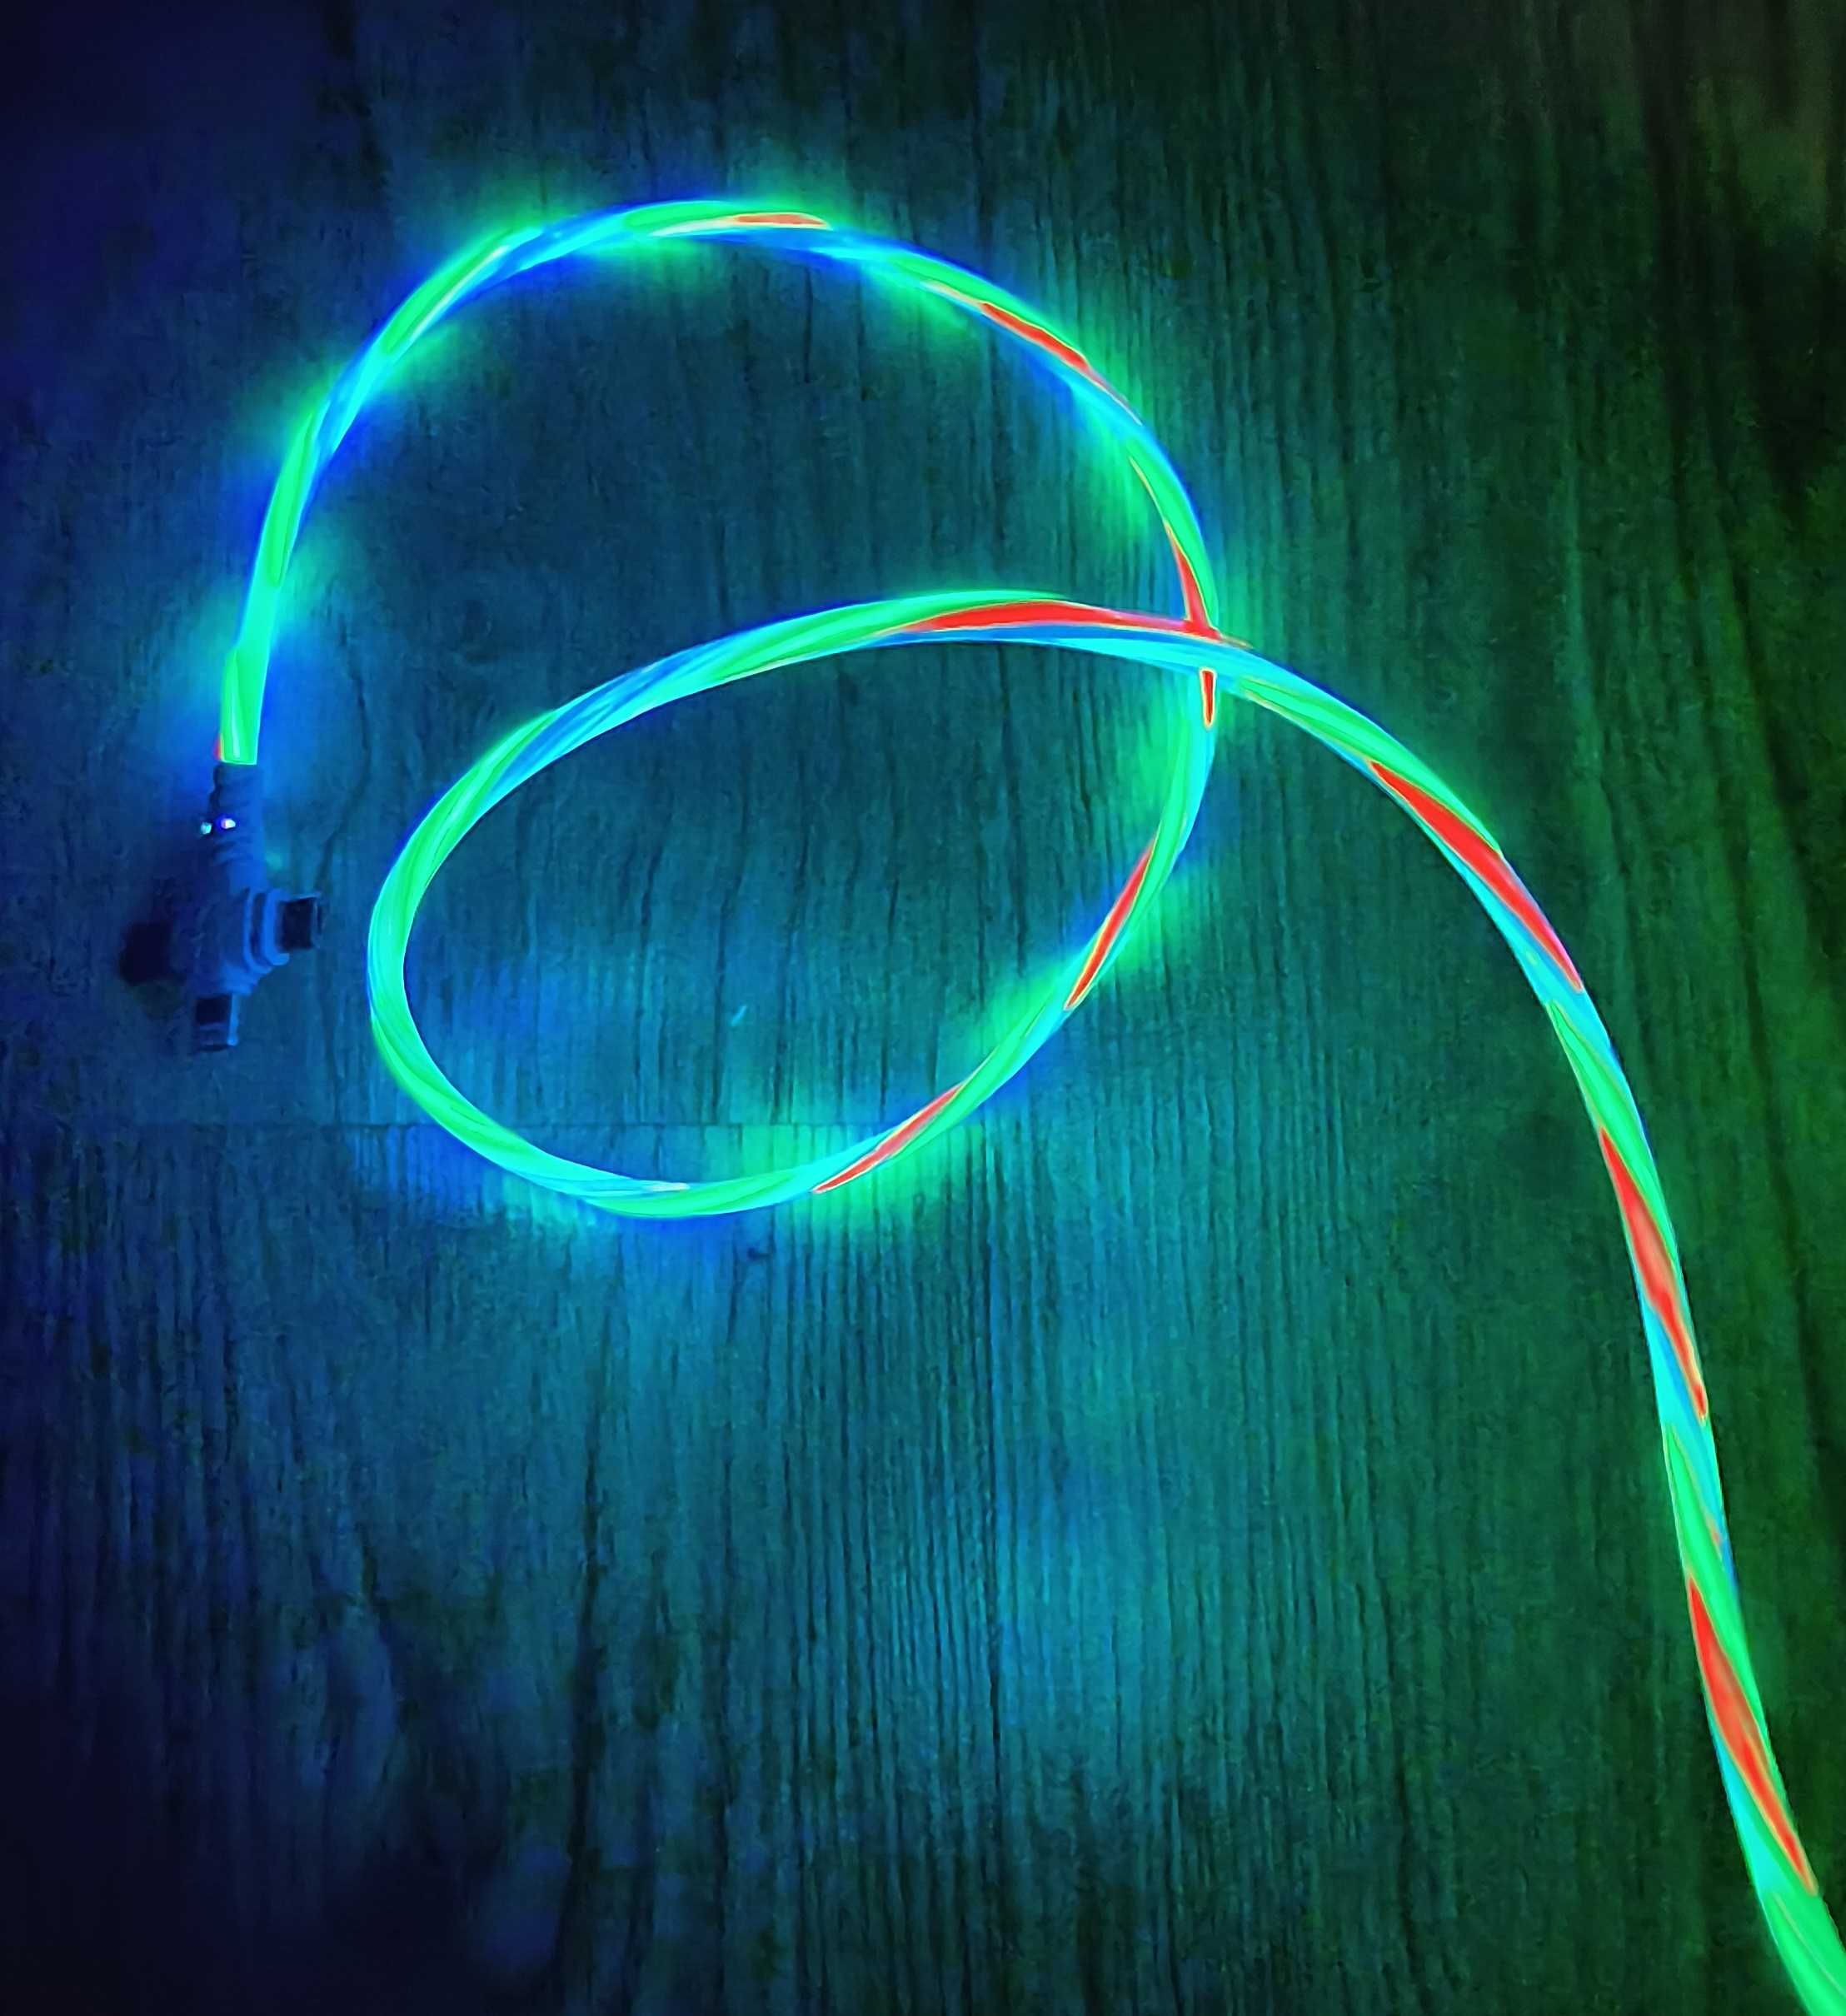 Świetlny kabel ładujący 3A 3w1 Micro USB C Lightning 1m LED